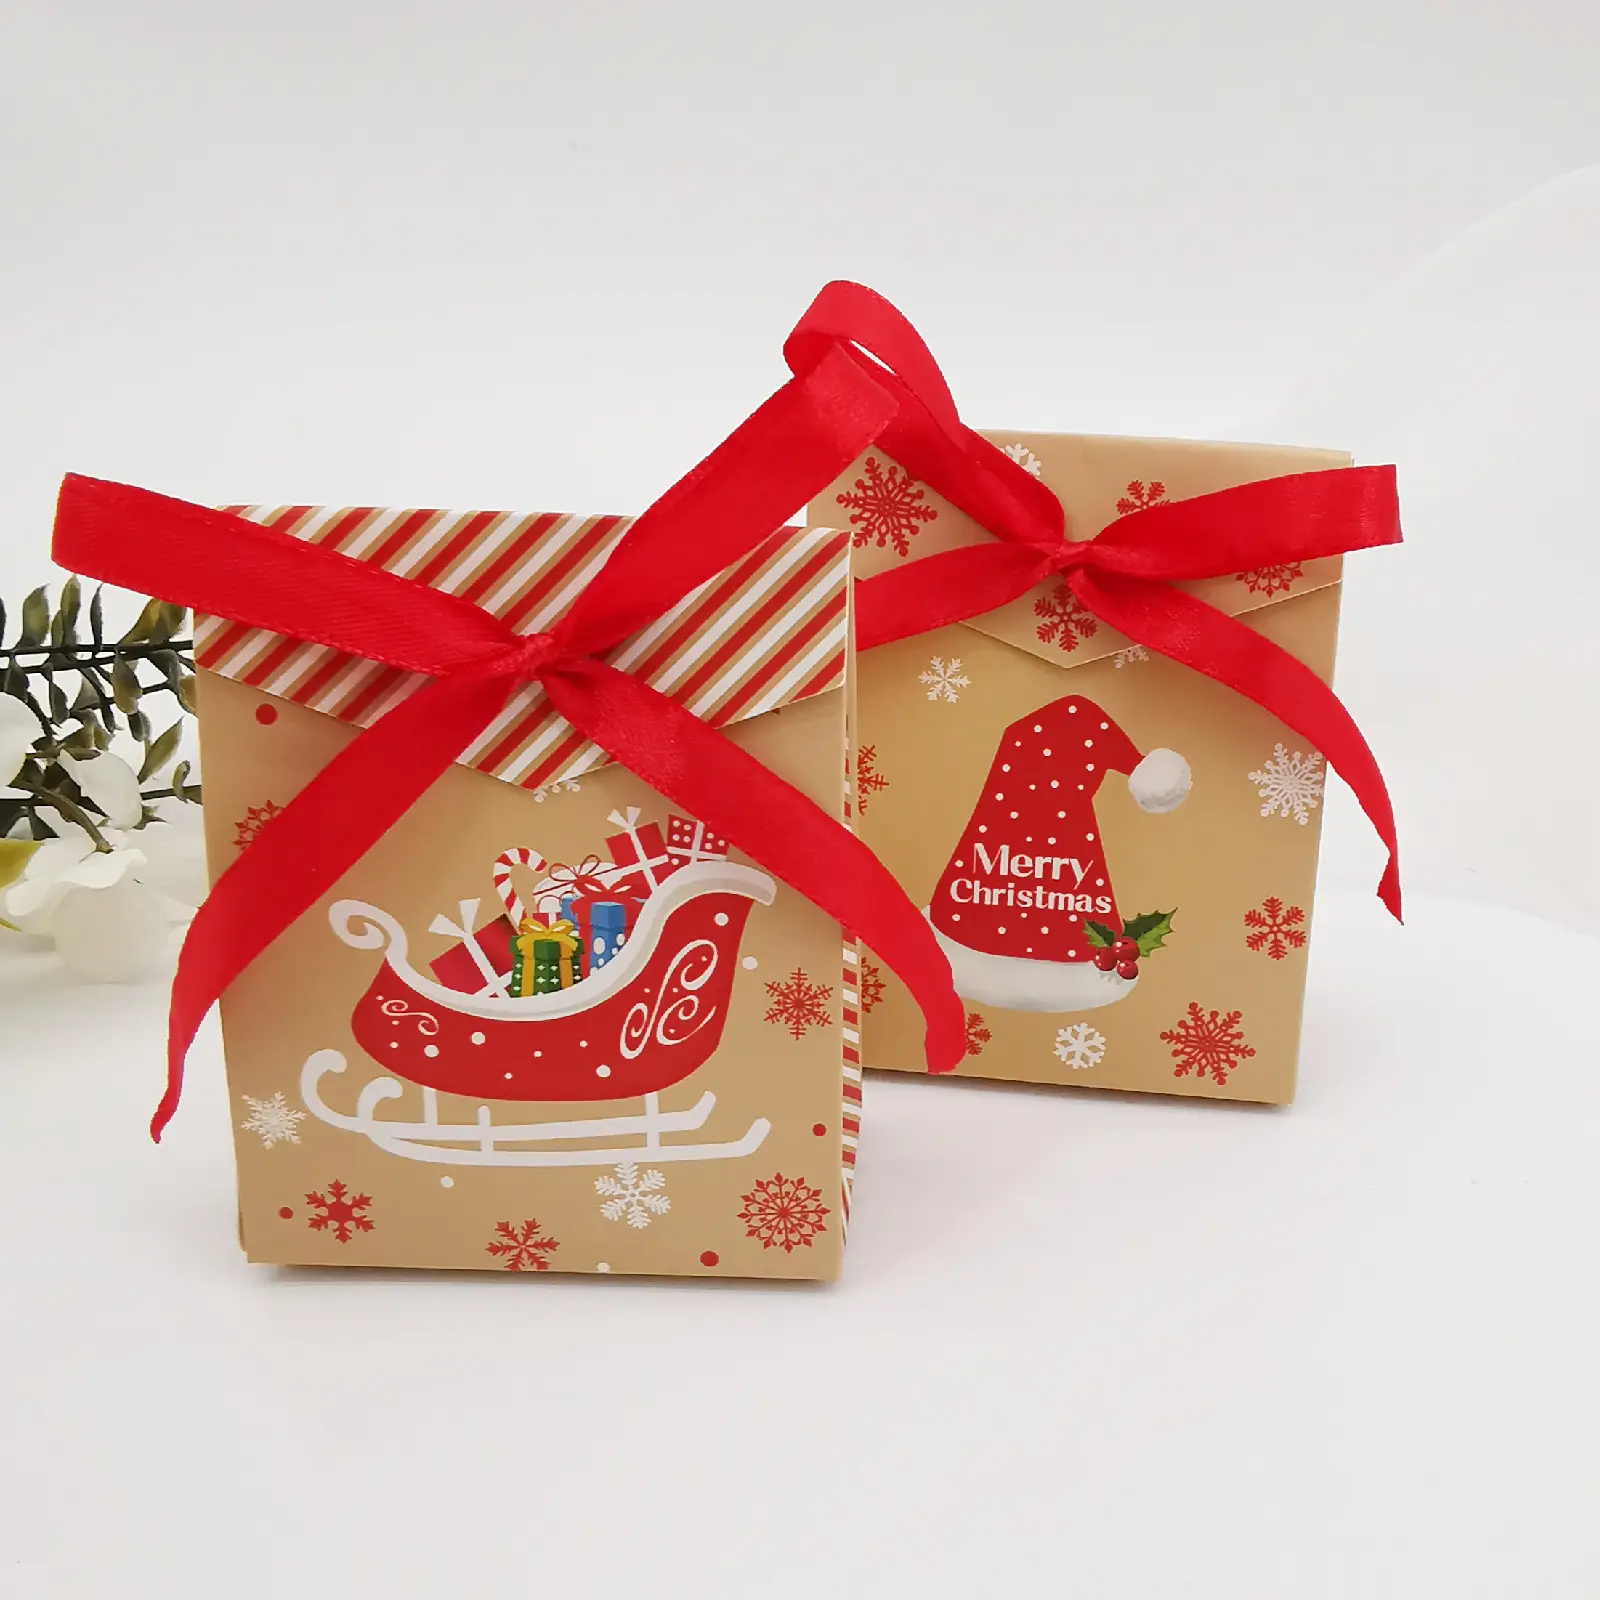 Bolsa de transporte de bolsas de papel de Navidad al por mayor para boutique minorista Paquete de regalos de Feliz Navidad bolsa de papel mezcla de 4 estilos con cinta